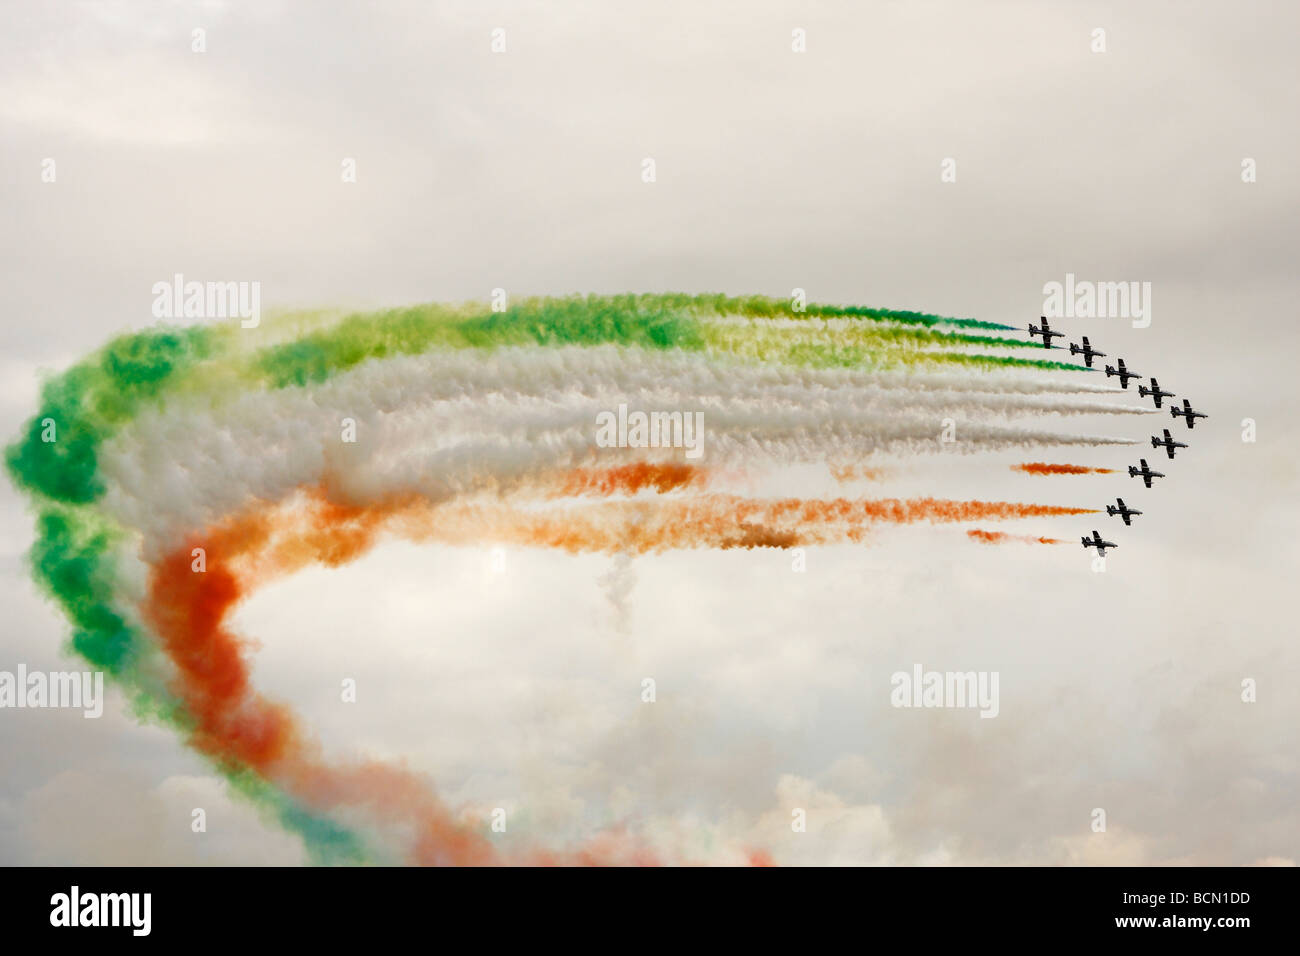 "Frecce Tricolori" [italien] de la Force aérienne de l'équipe d'acrobaties aériennes le vol en formation, la fumée [RAF] Fairford, Gloucestershire, Royaume-Uni Banque D'Images